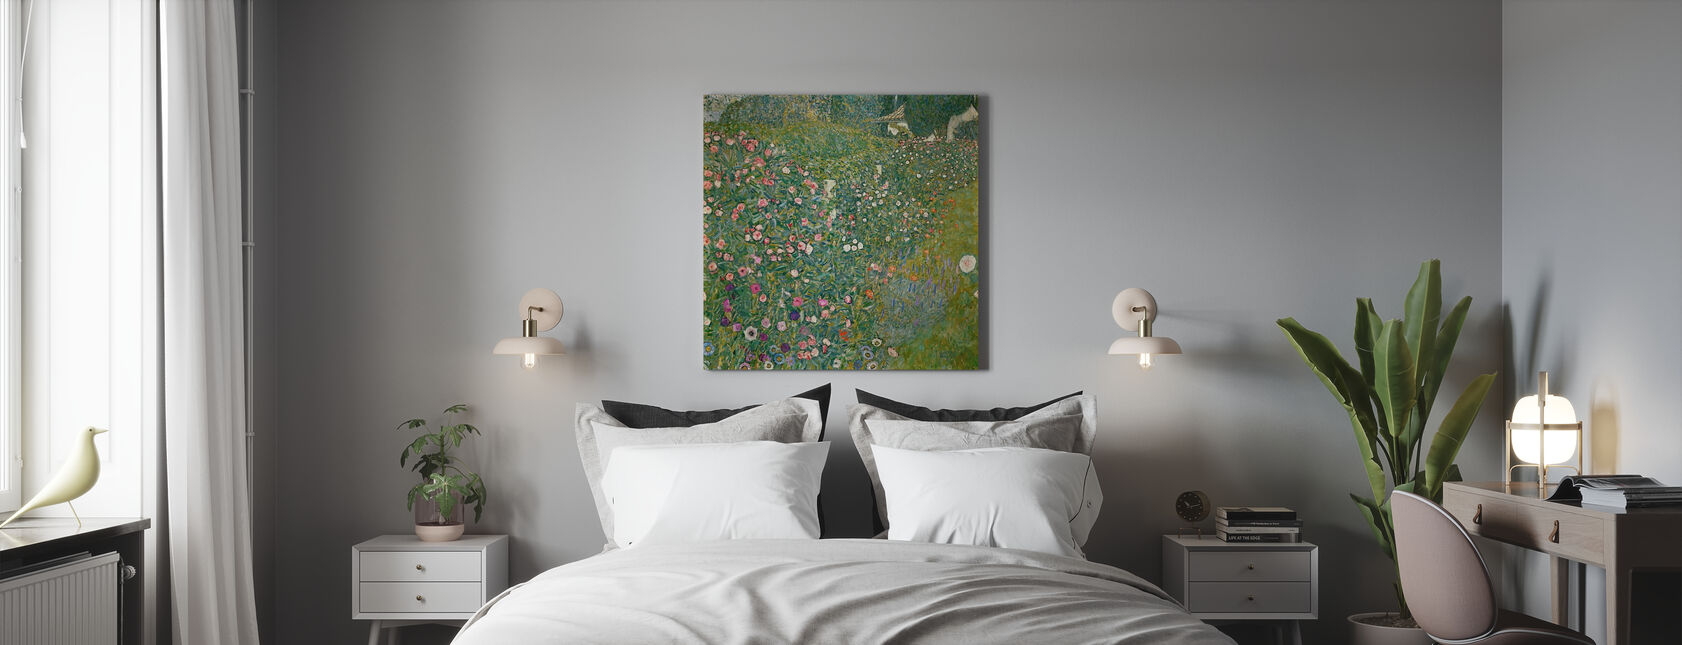 Klimt, Gustav - Italian Garden Landscape - Canvas print - Bedroom